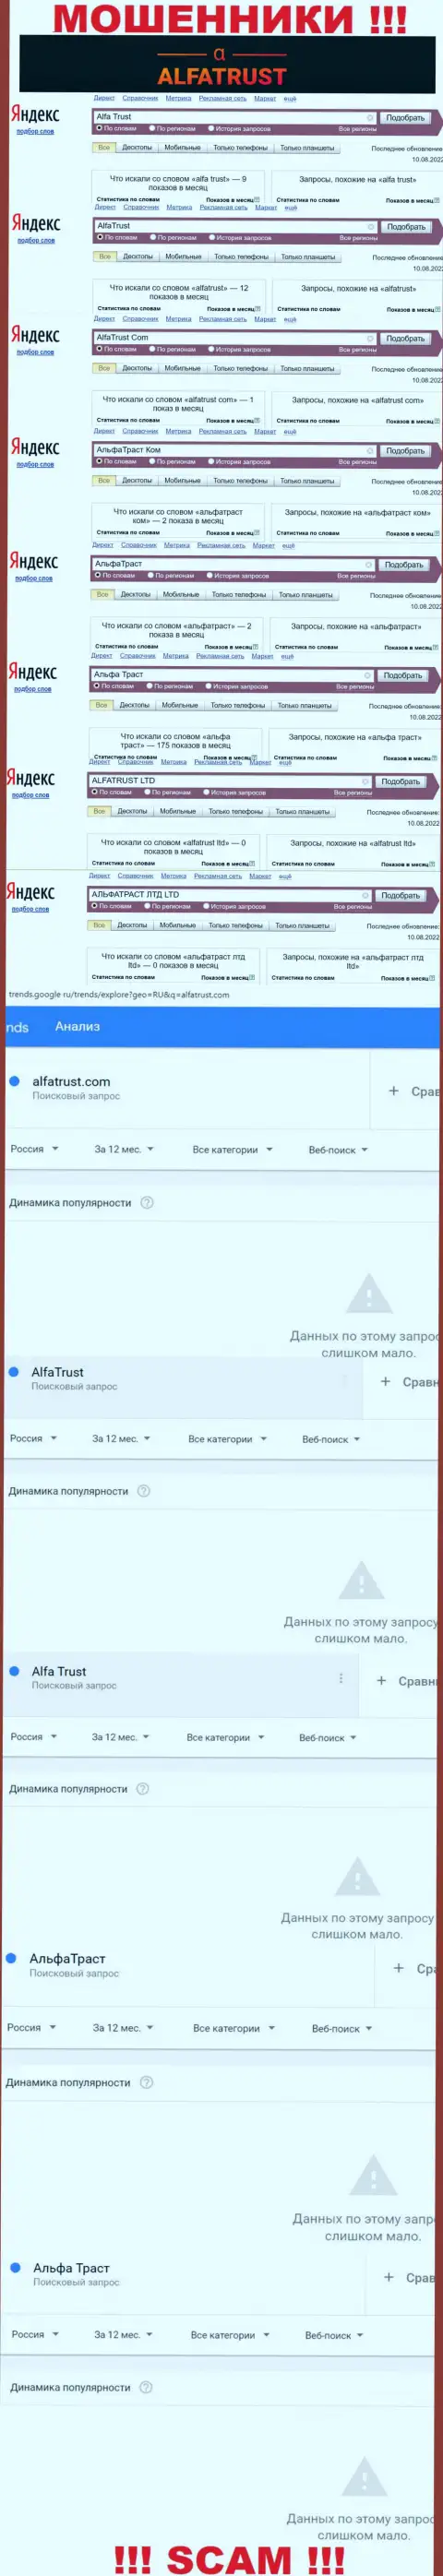 Итог online запросов сведений про мошенников AlfaTrust во всемирной интернет сети